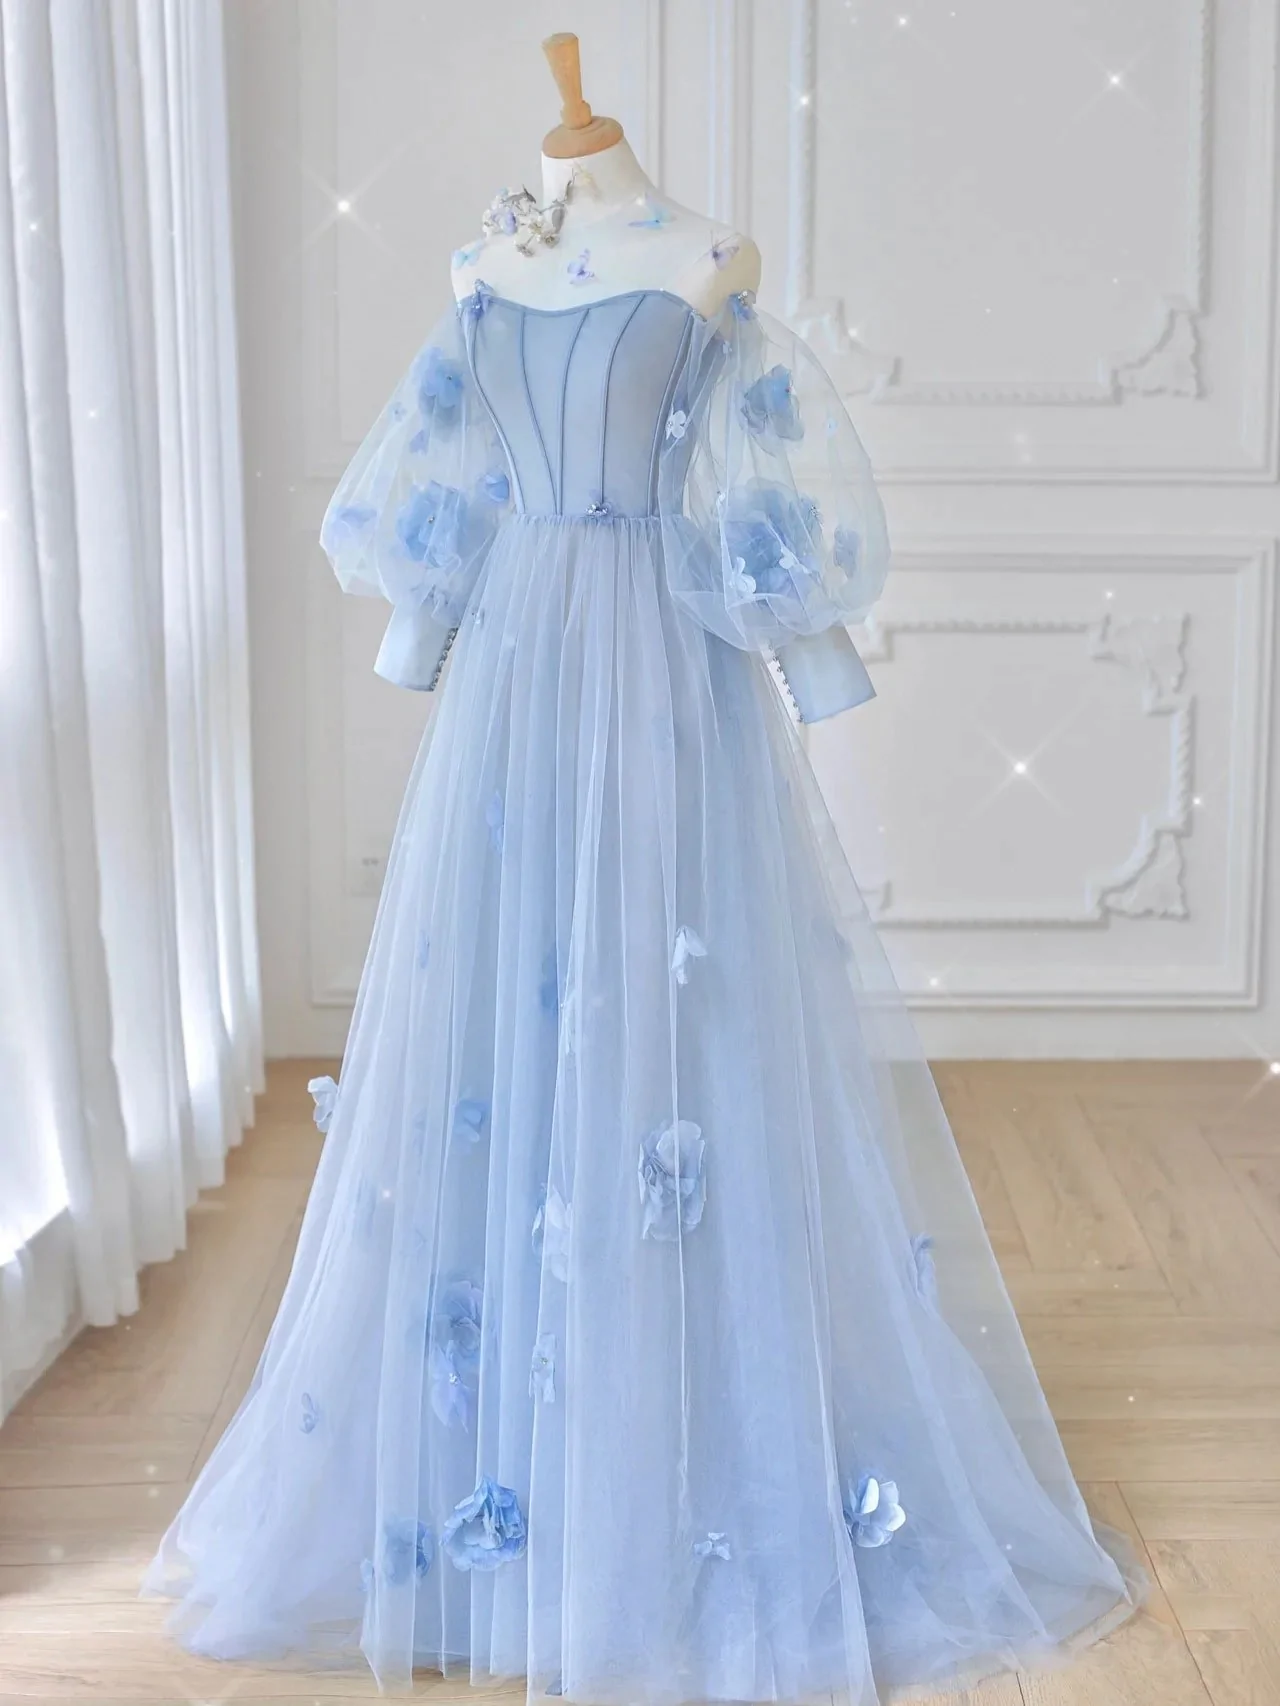 Fairytale Floral Appliqued Sky Blue Formal Dress - Promfy